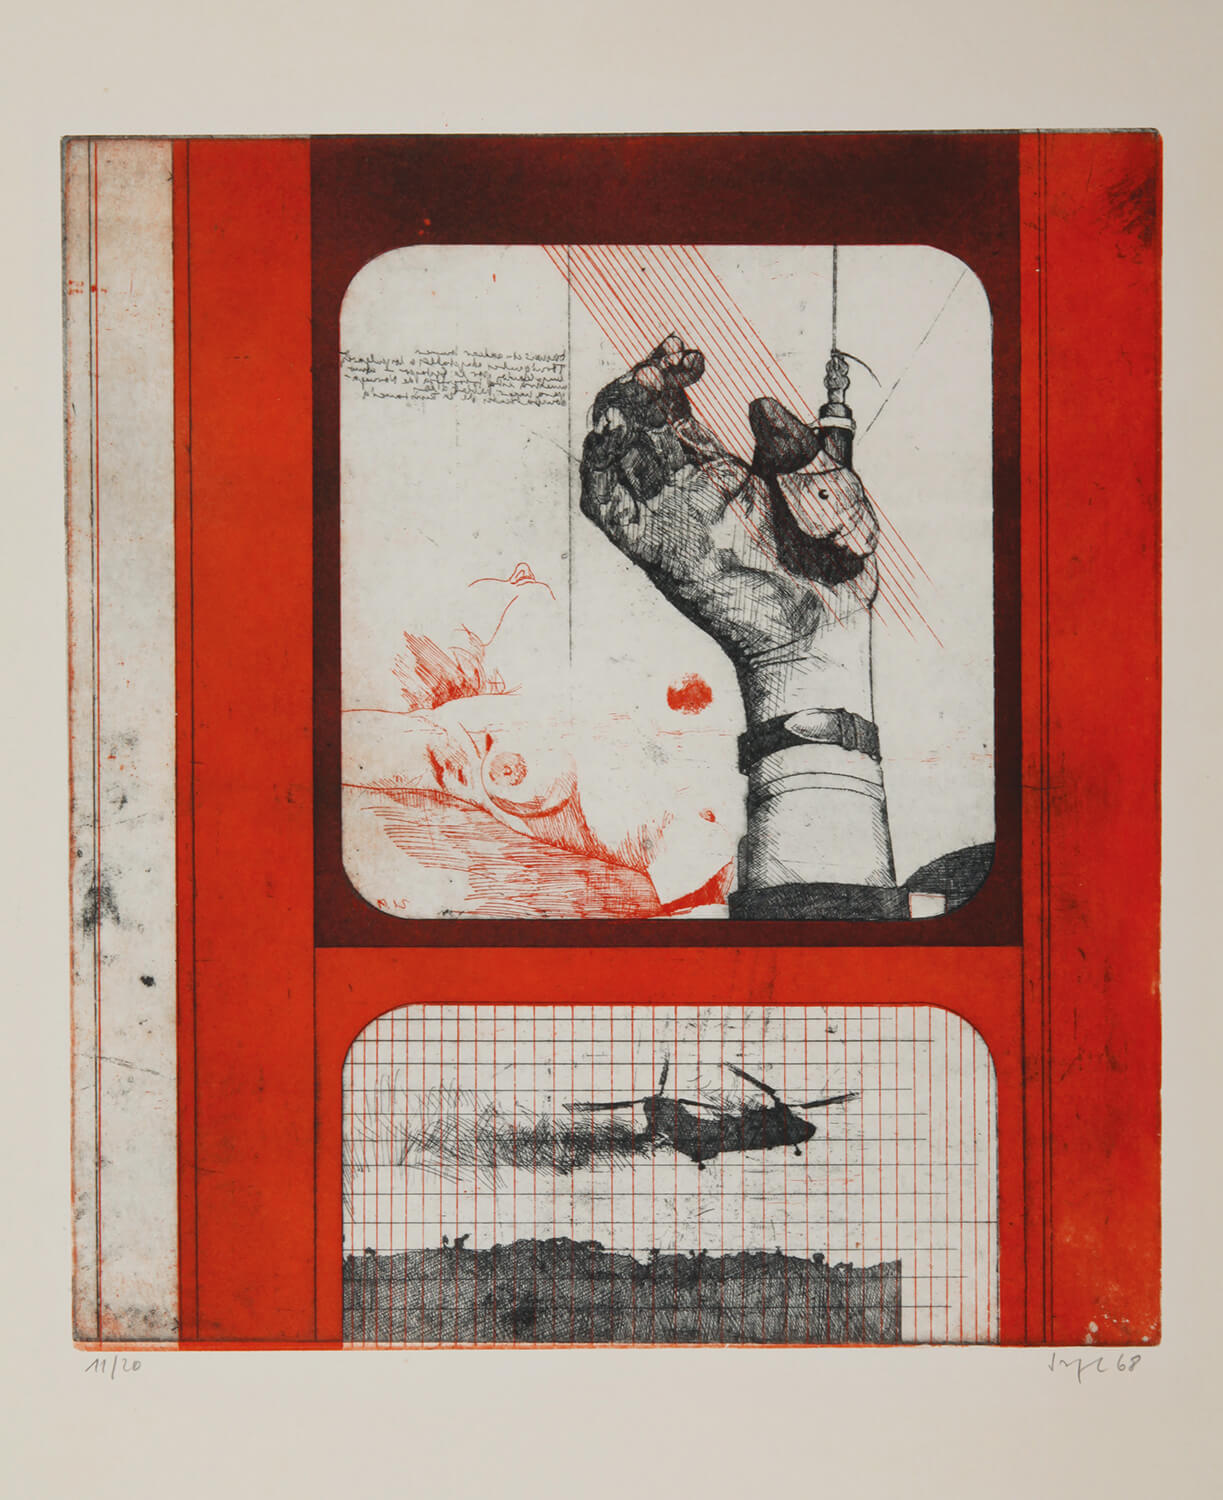 Peter Sorge, Heißer Sommer I, 1967, Farbradierung, Auflage: 20, Bild: 44 x 39,50 cm, Blatt: 75,6 x 54 cm (nur zusammen mit Heißer Sommer II + III)